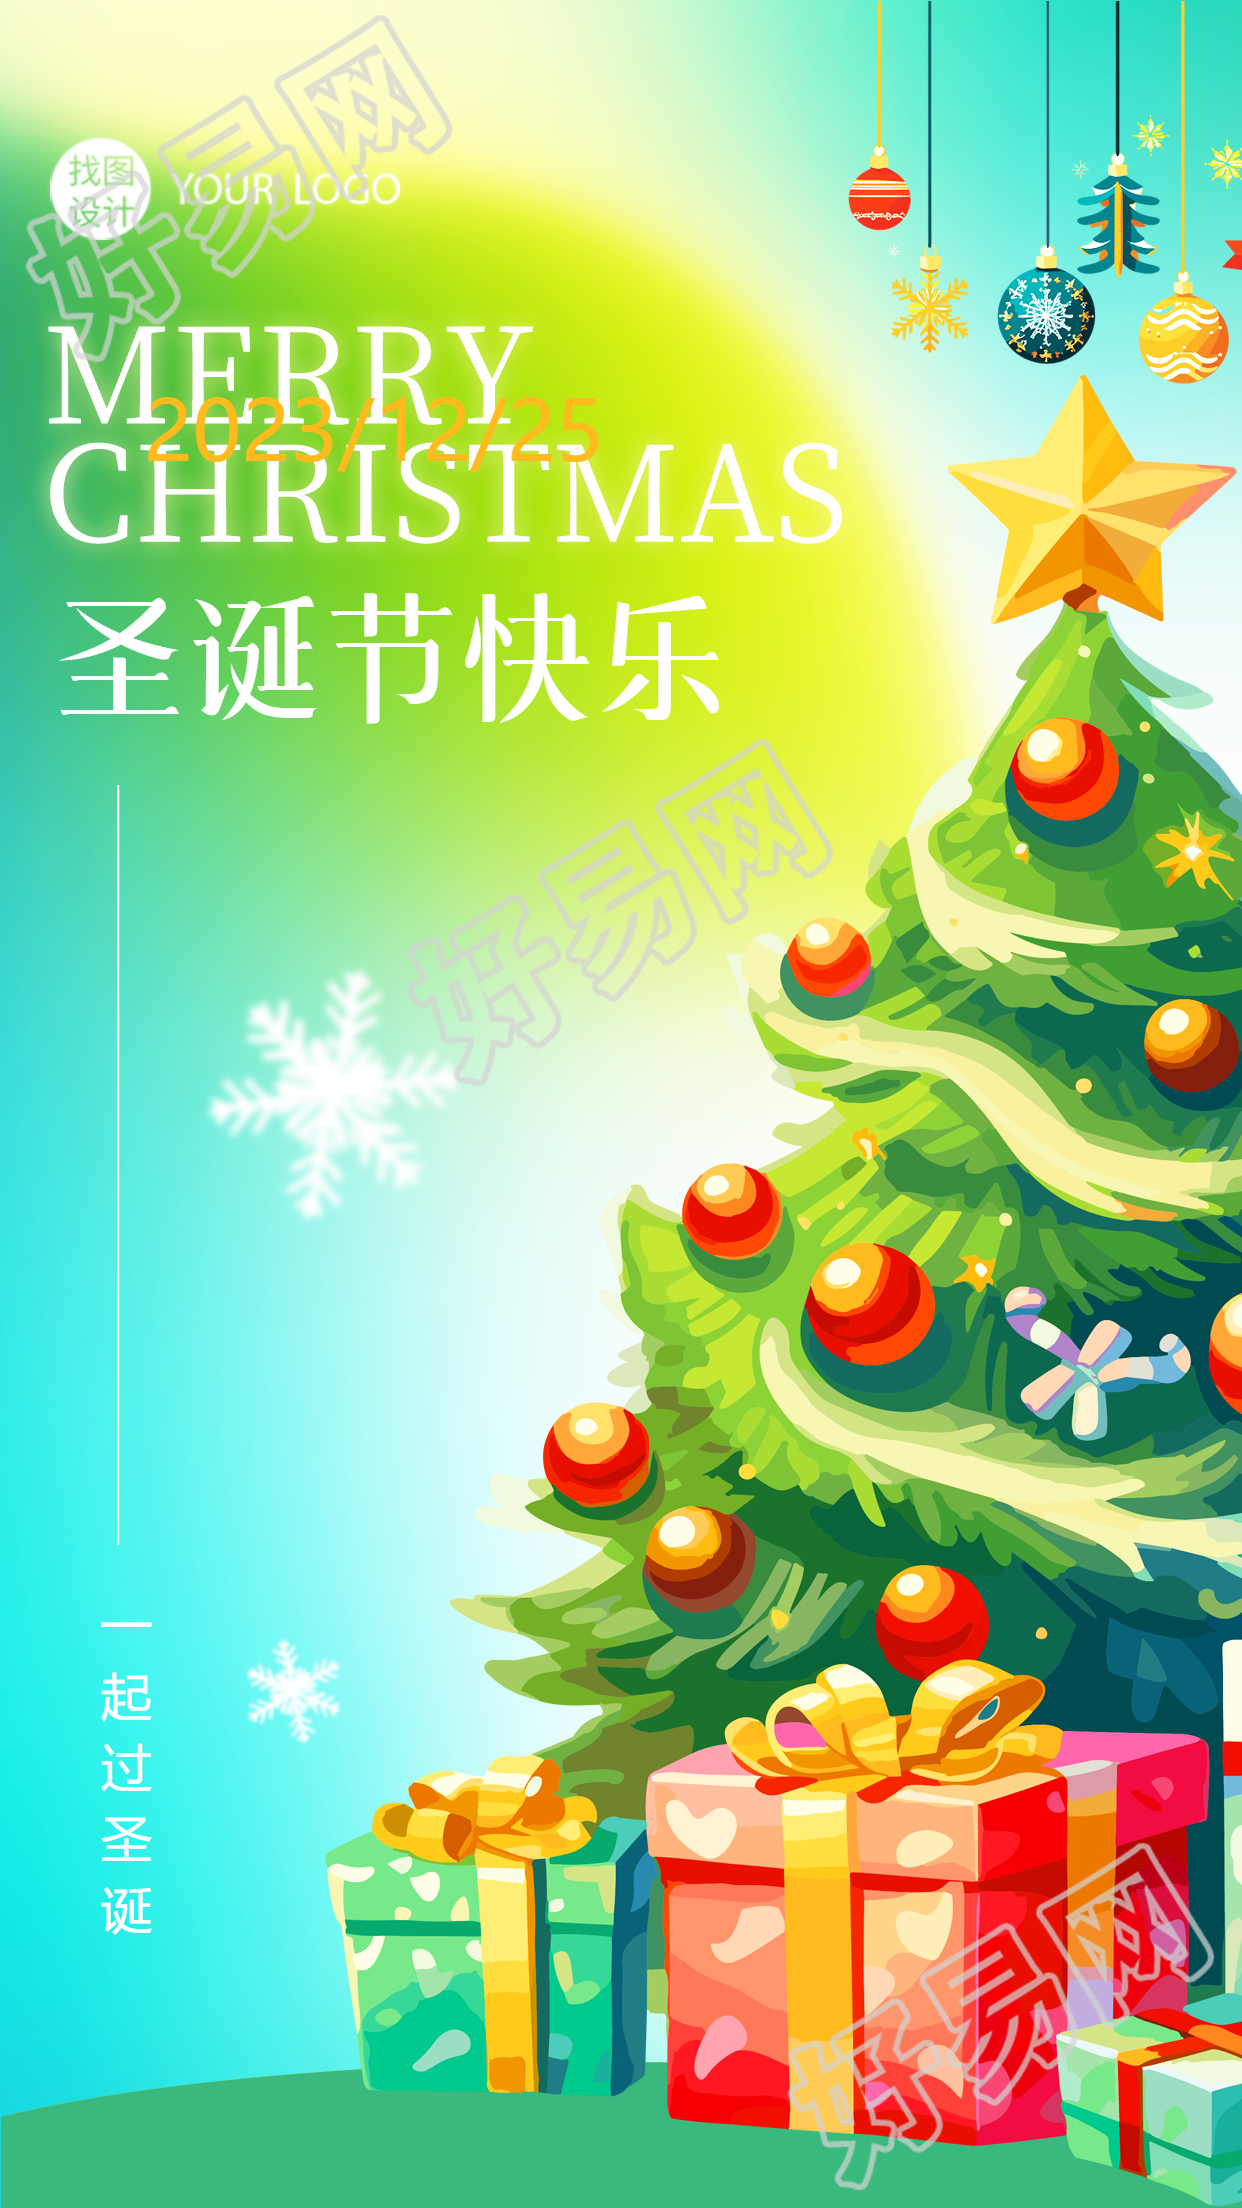 老师祝您圣诞节快乐的手机海报